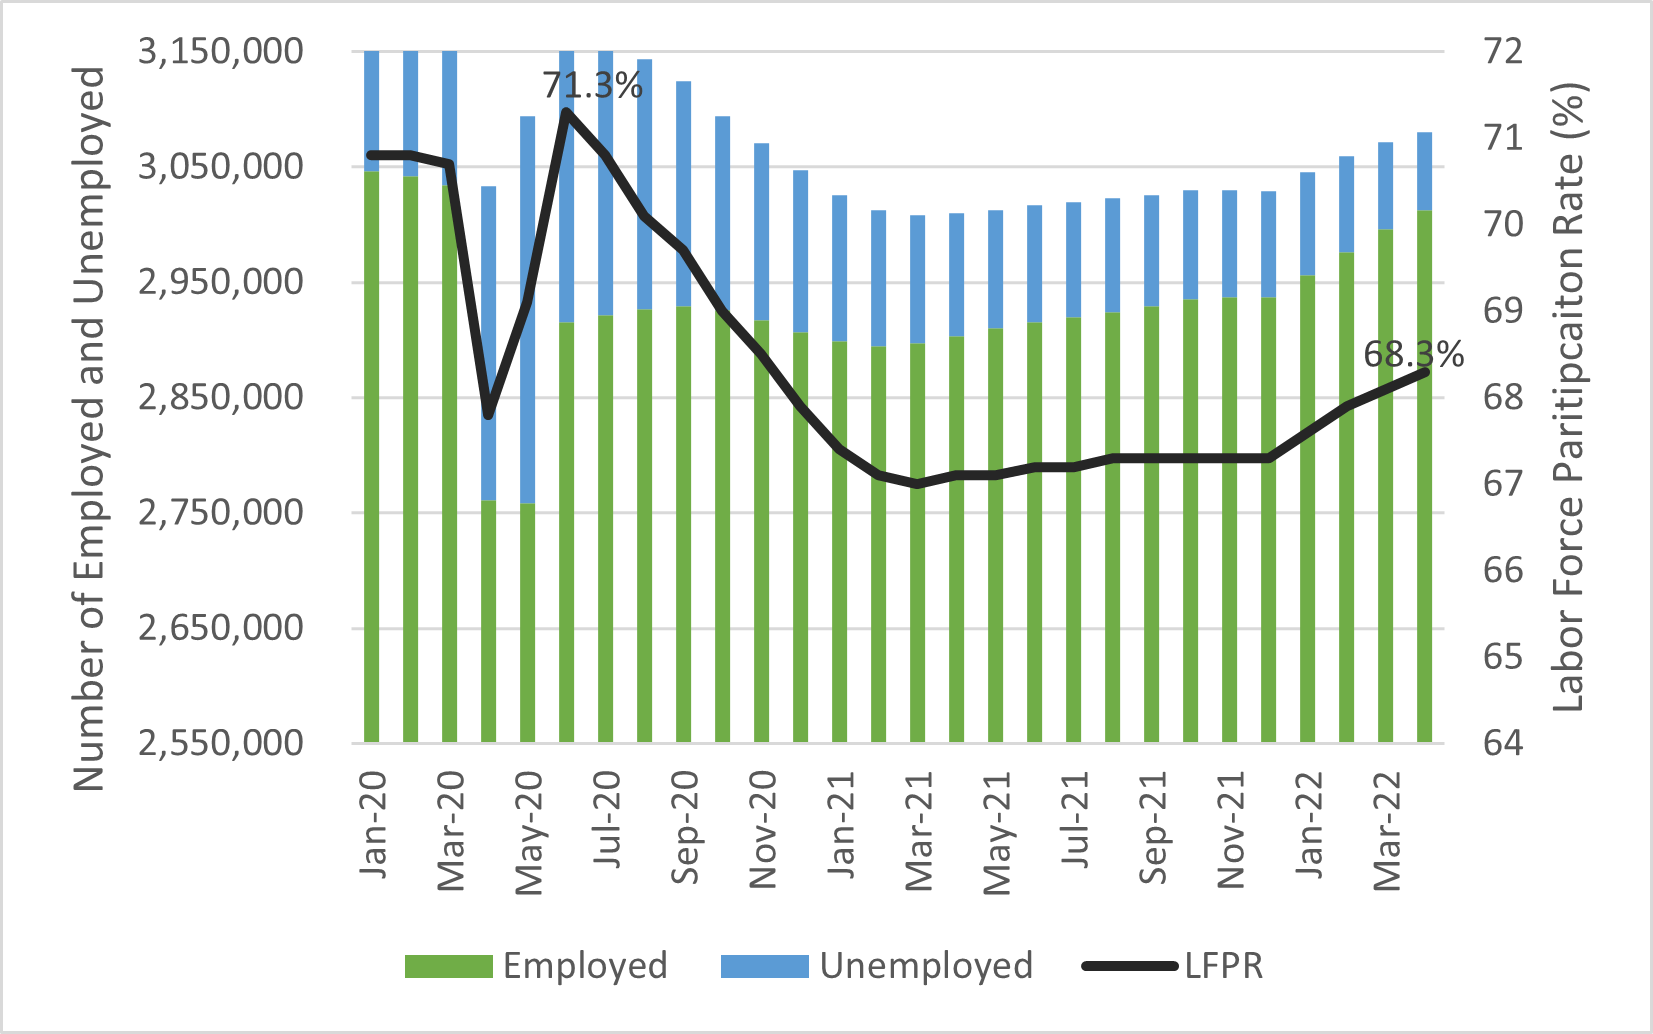 Employed Plus Unemployed